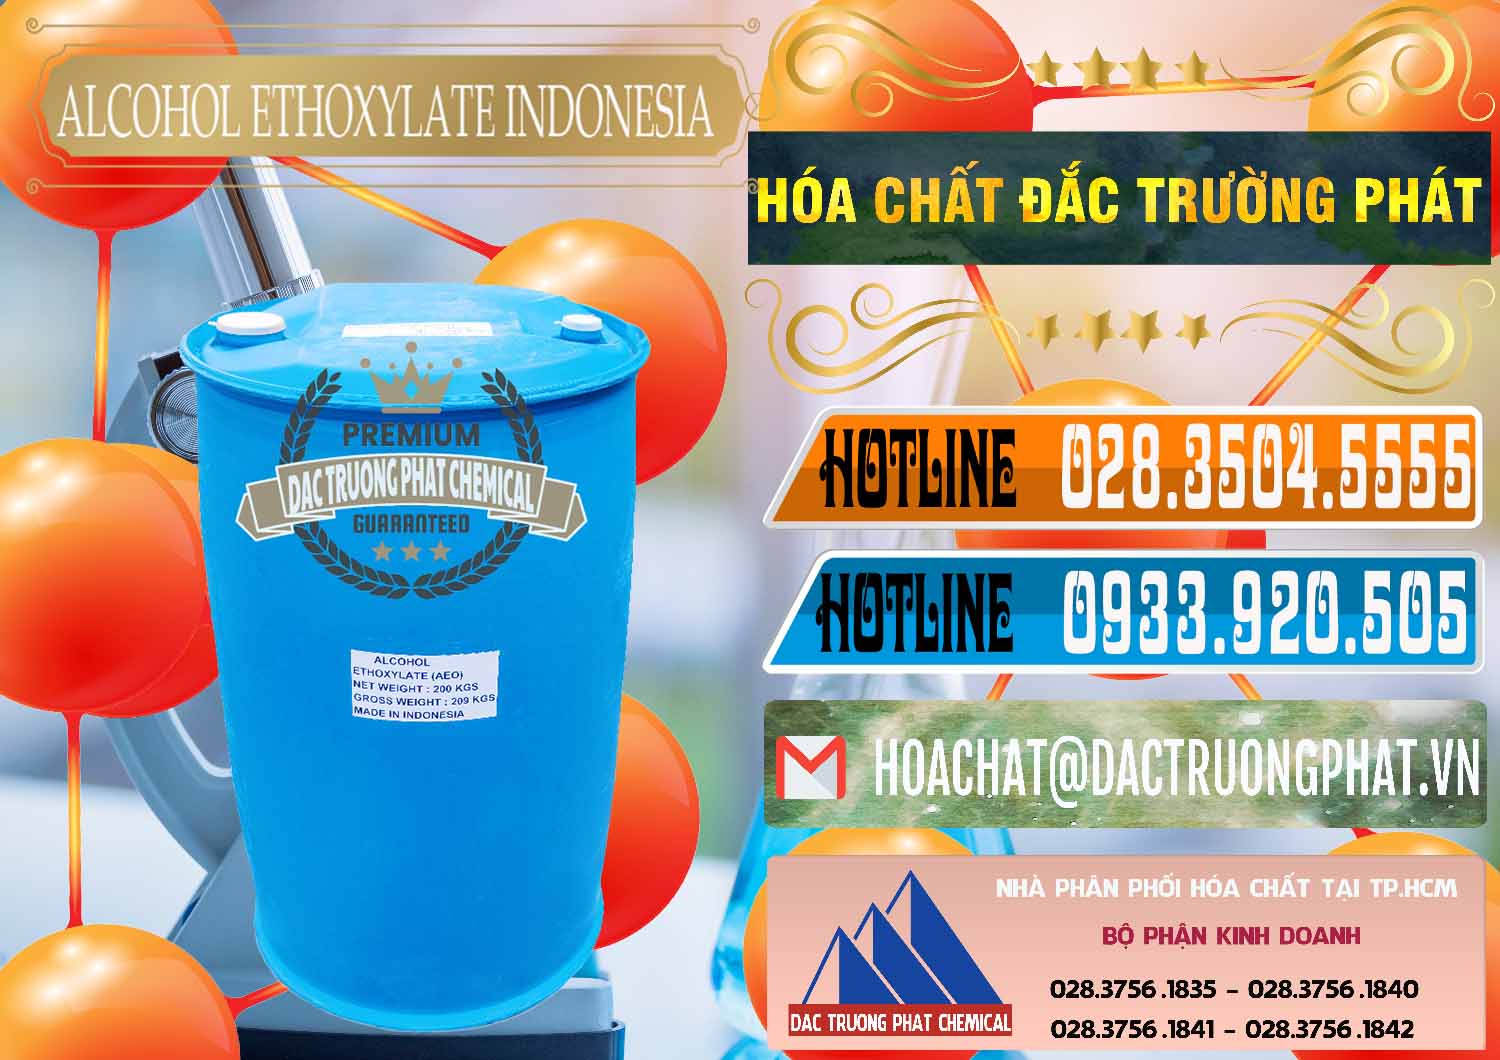 Nơi chuyên bán ( phân phối ) Alcohol Ethoxylate Indonesia - 0308 - Công ty kinh doanh và cung cấp hóa chất tại TP.HCM - stmp.net